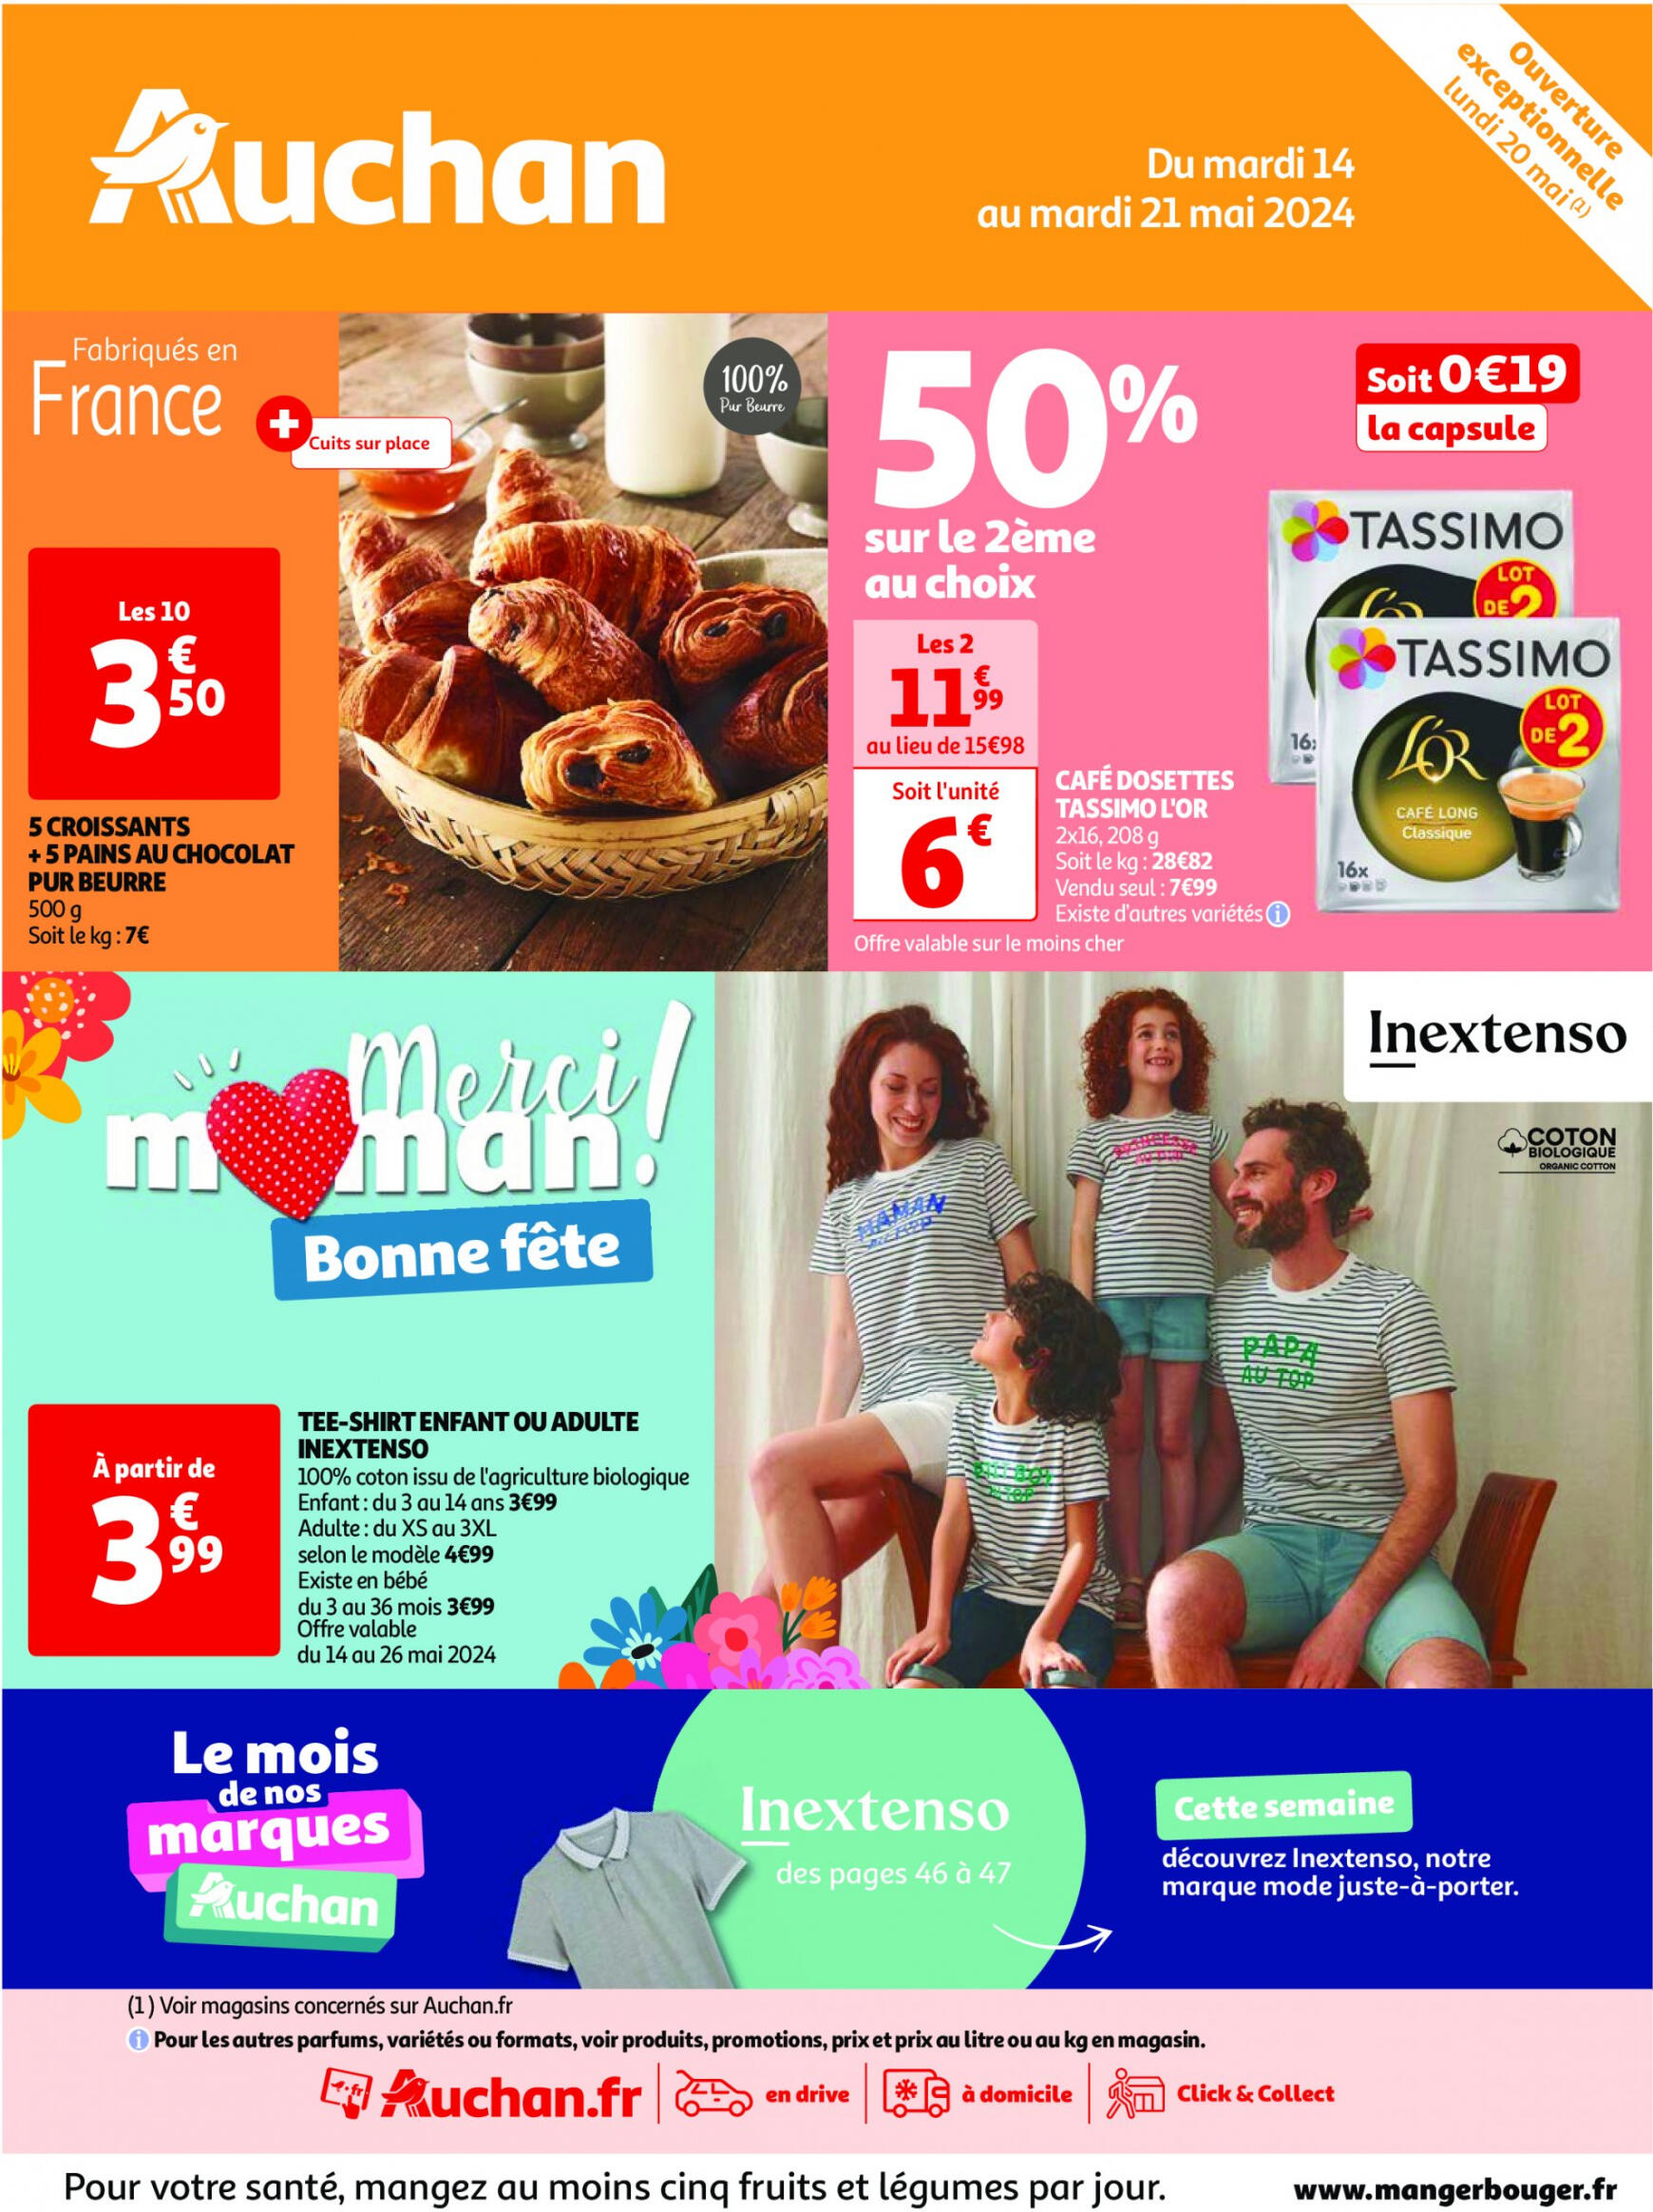 auchan - Auchan - Nos surgelés ont tout bon folder huidig 14.05. - 21.05. - page: 1